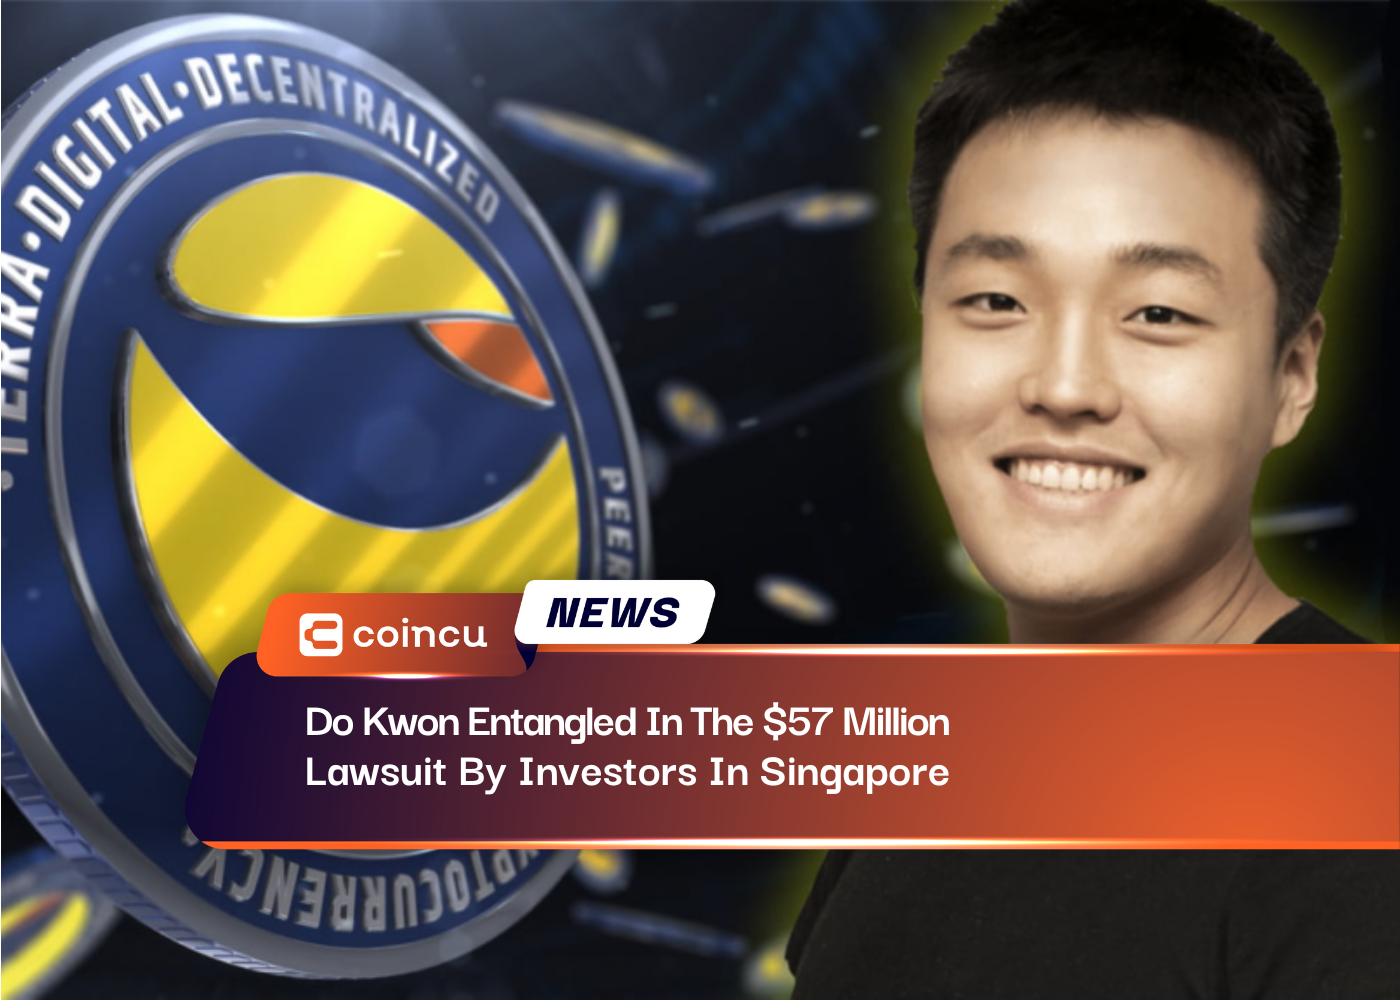 ド・グォン、シンガポールの投資家らによる57万ドルの訴訟に巻き込まれる